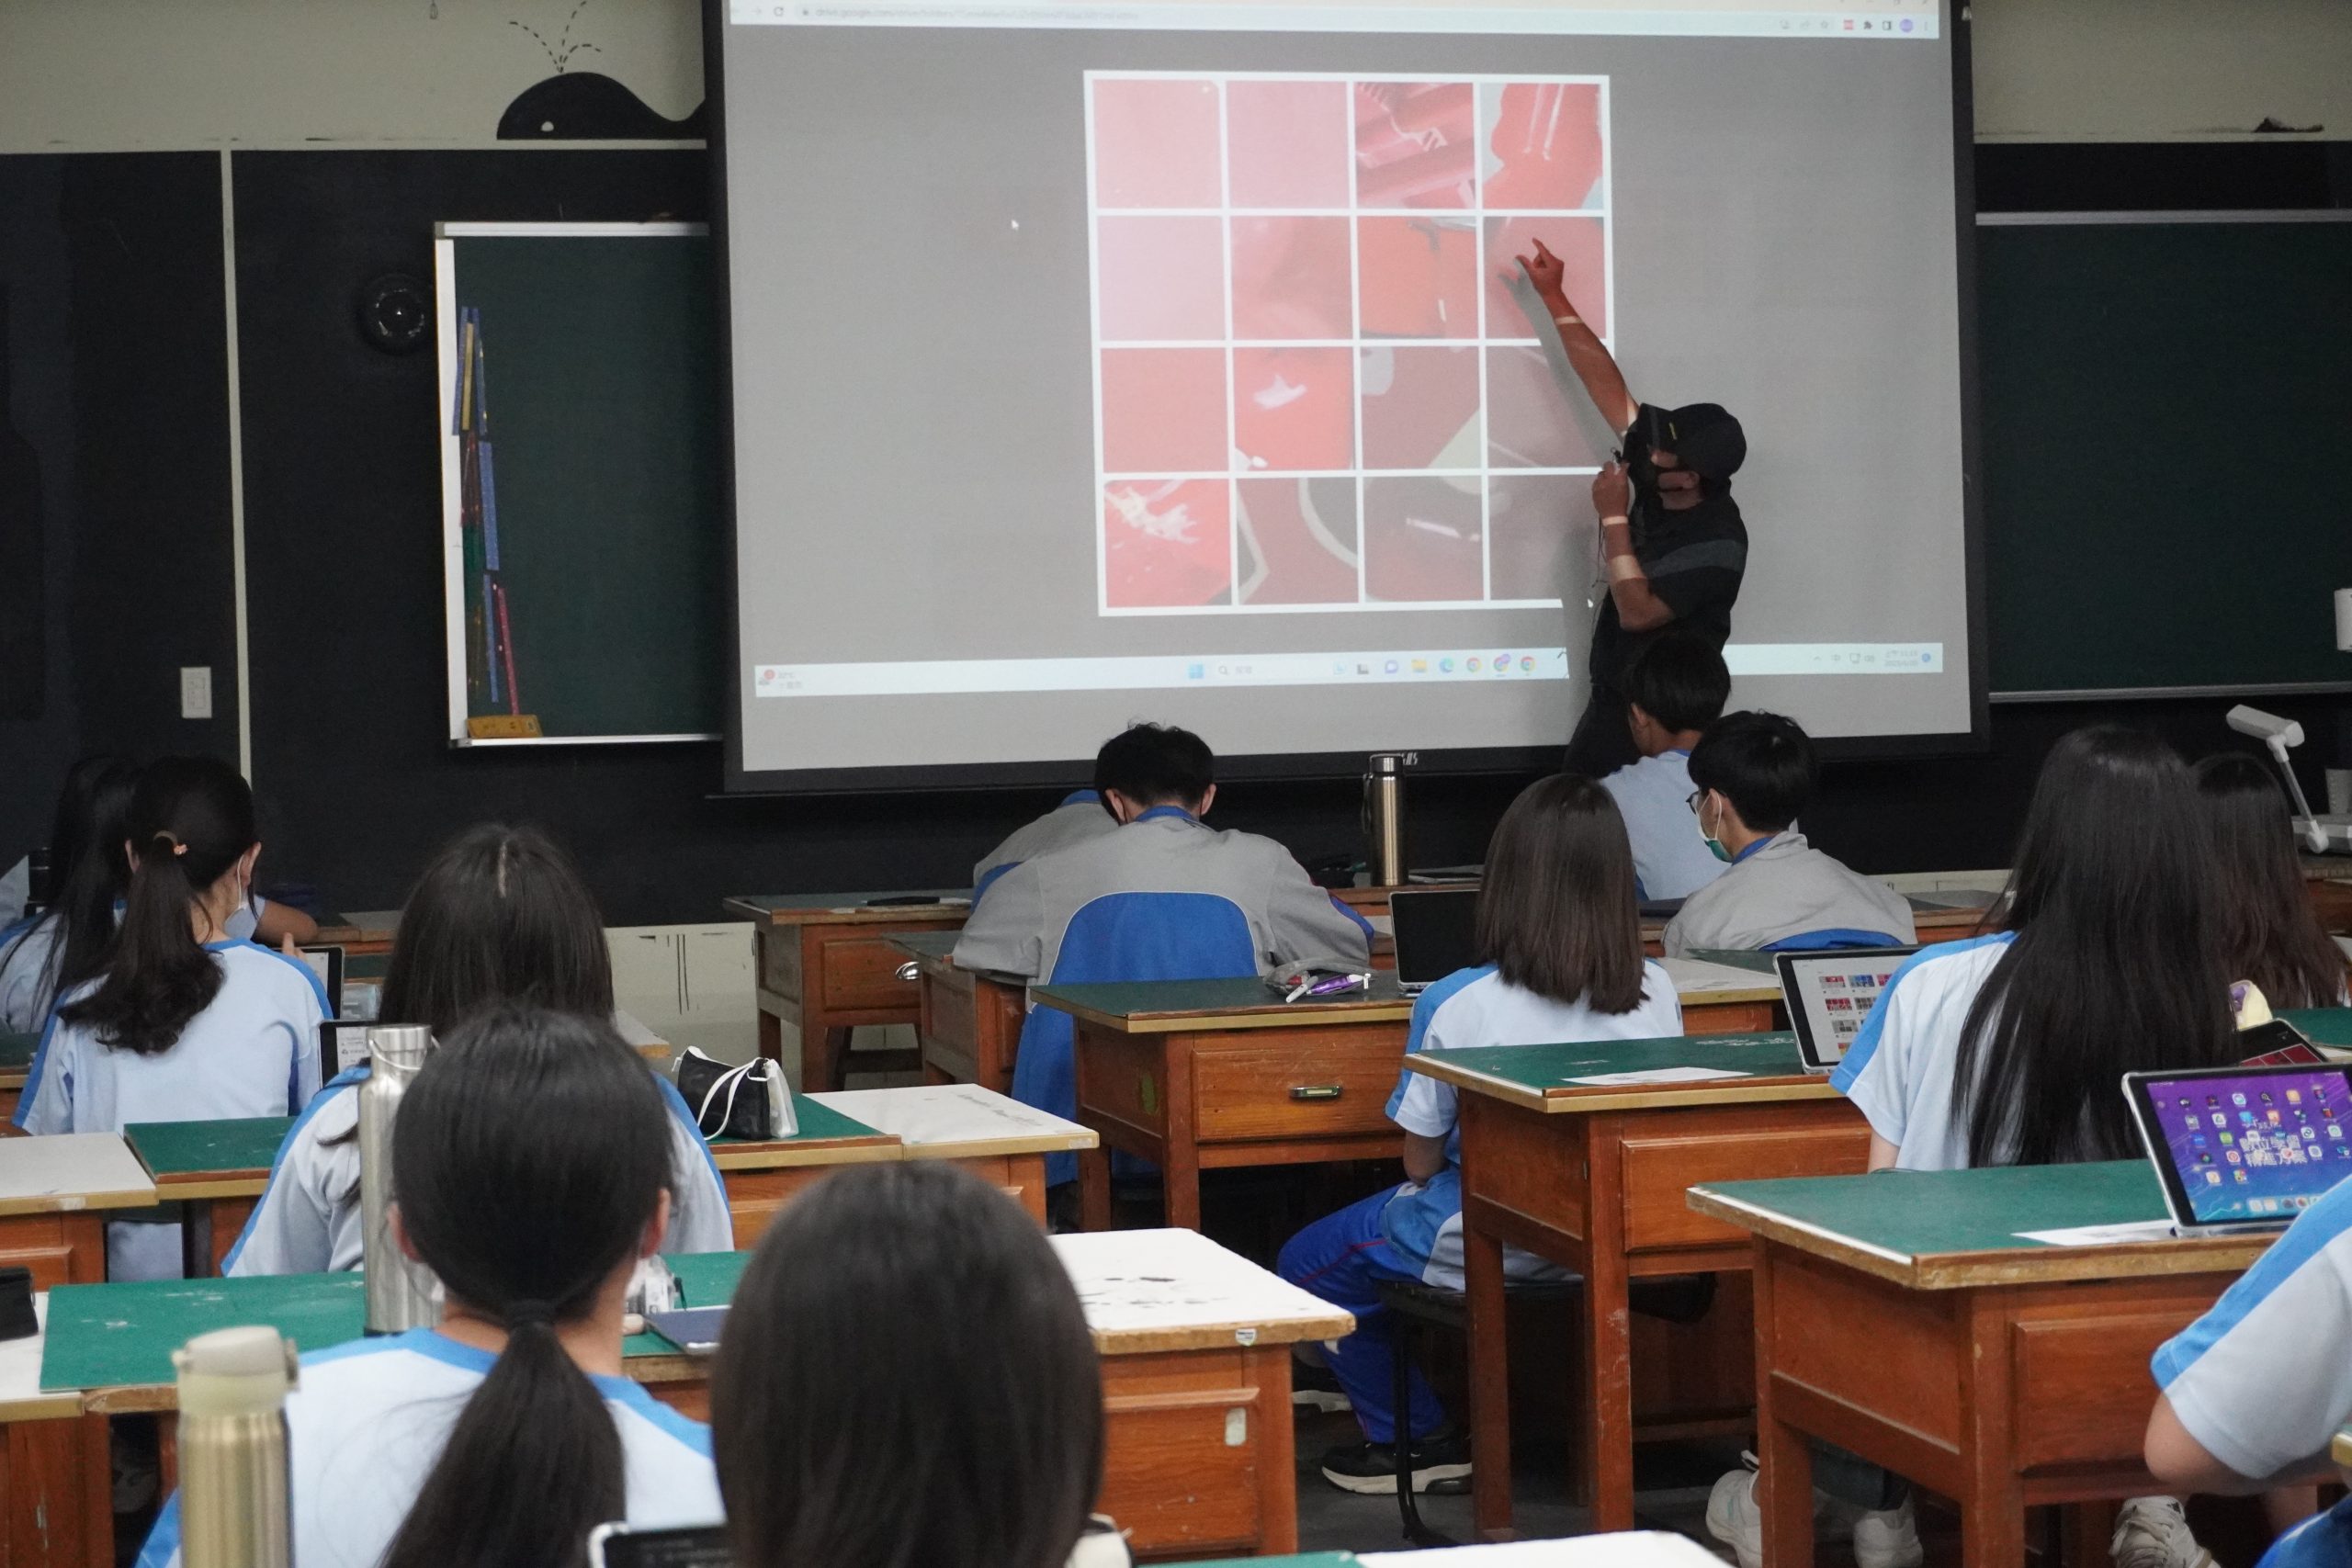 111學年度第二學期於國立斗六家事商業職業學校施辦自拍拼圖課程實作紀錄系列照片共21張